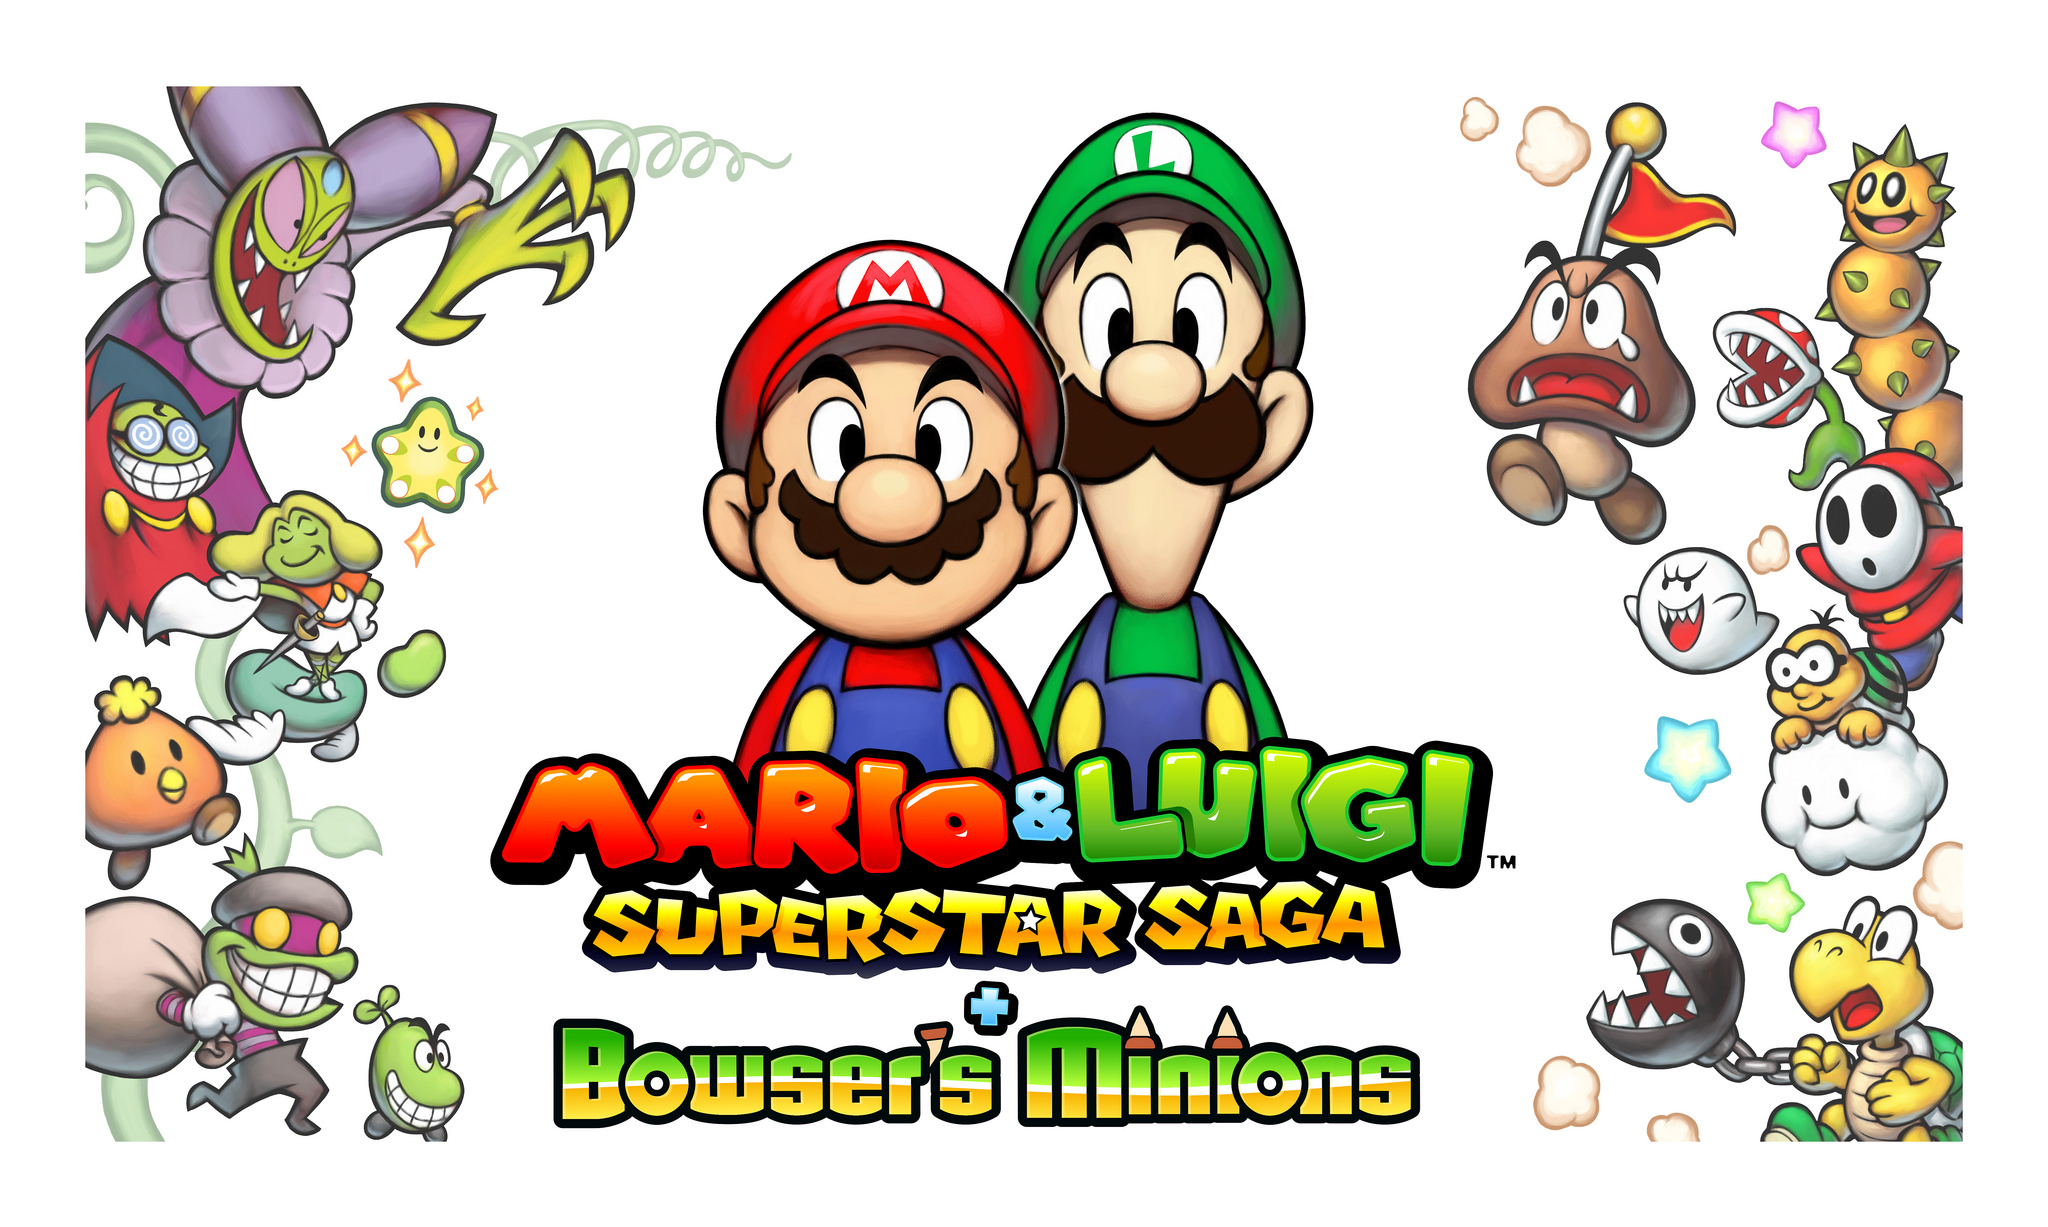 Annunciato ufficialmente il remake di Mario & Luigi Superstar Saga per Nintendo 3DS